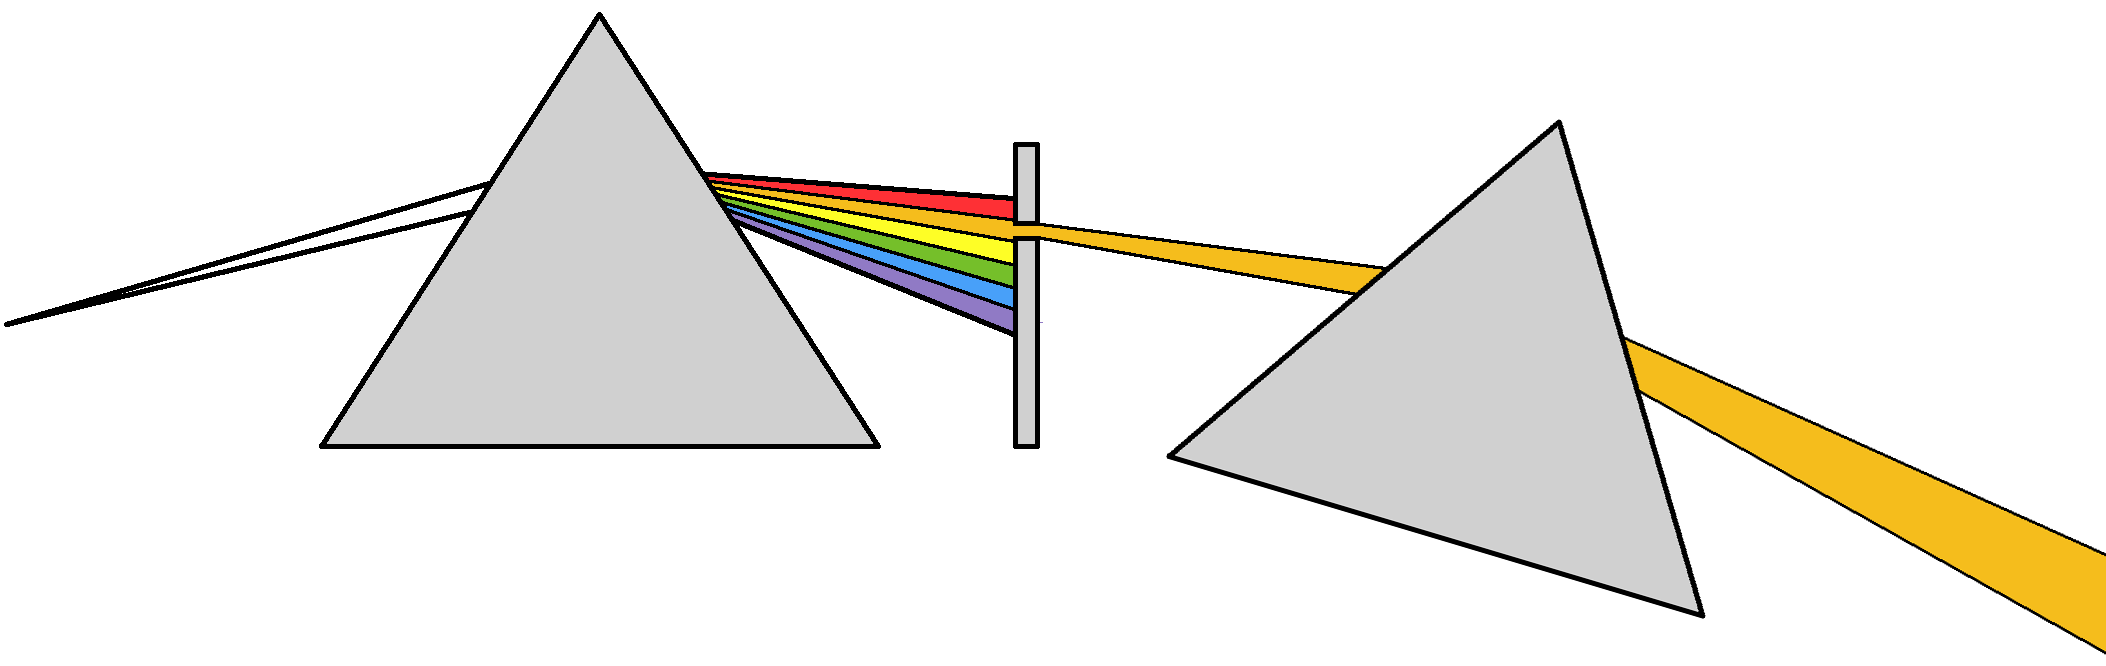 Prisma Zerlegung in Spektralfarben mit Blende und weiterem Prisma